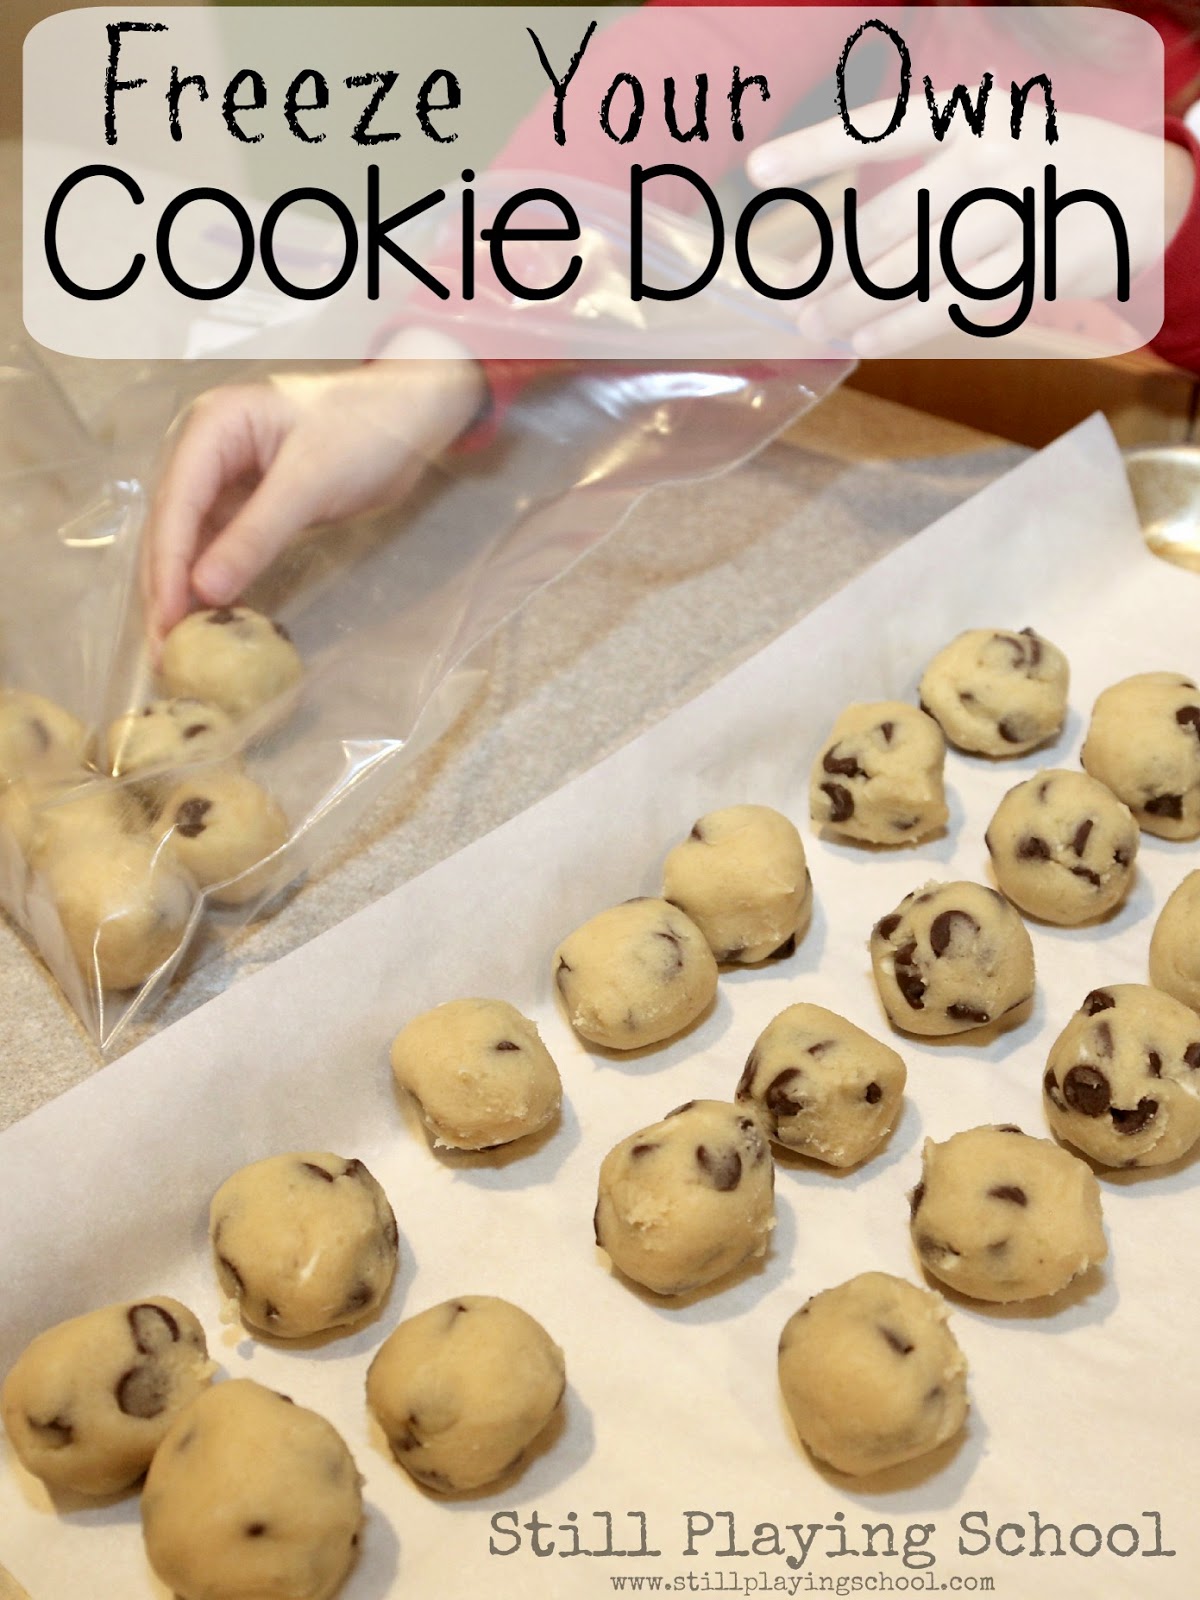 http://4.bp.blogspot.com/-cB0Lwl8qIYk/VQdiwg5yPuI/AAAAAAAANS8/cIdwaUygcvk/s1600/frozen-cookie-dough-how-to-freeze-homemade-DIY.jpg